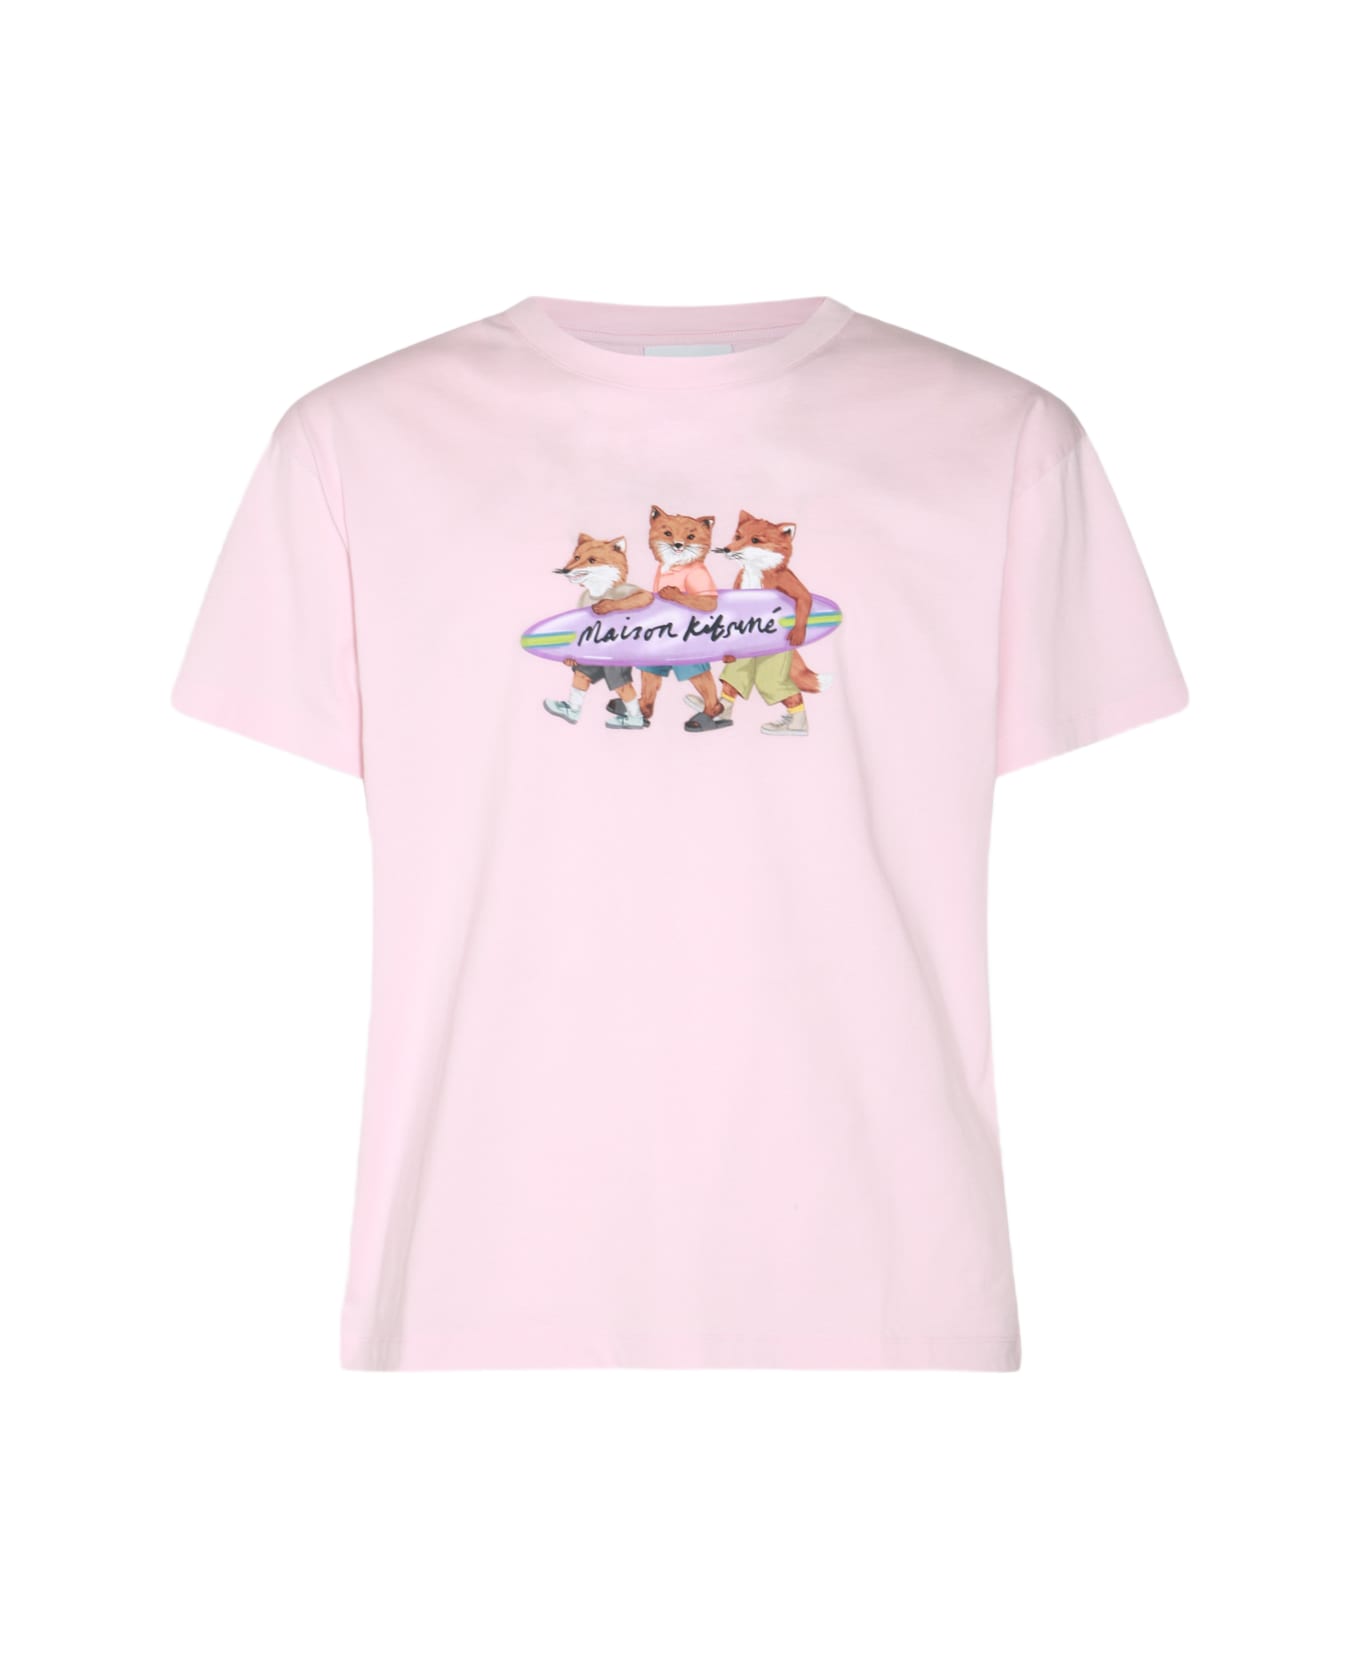 Maison Kitsuné Pink Cotton T-shirt - MILK SHAKE